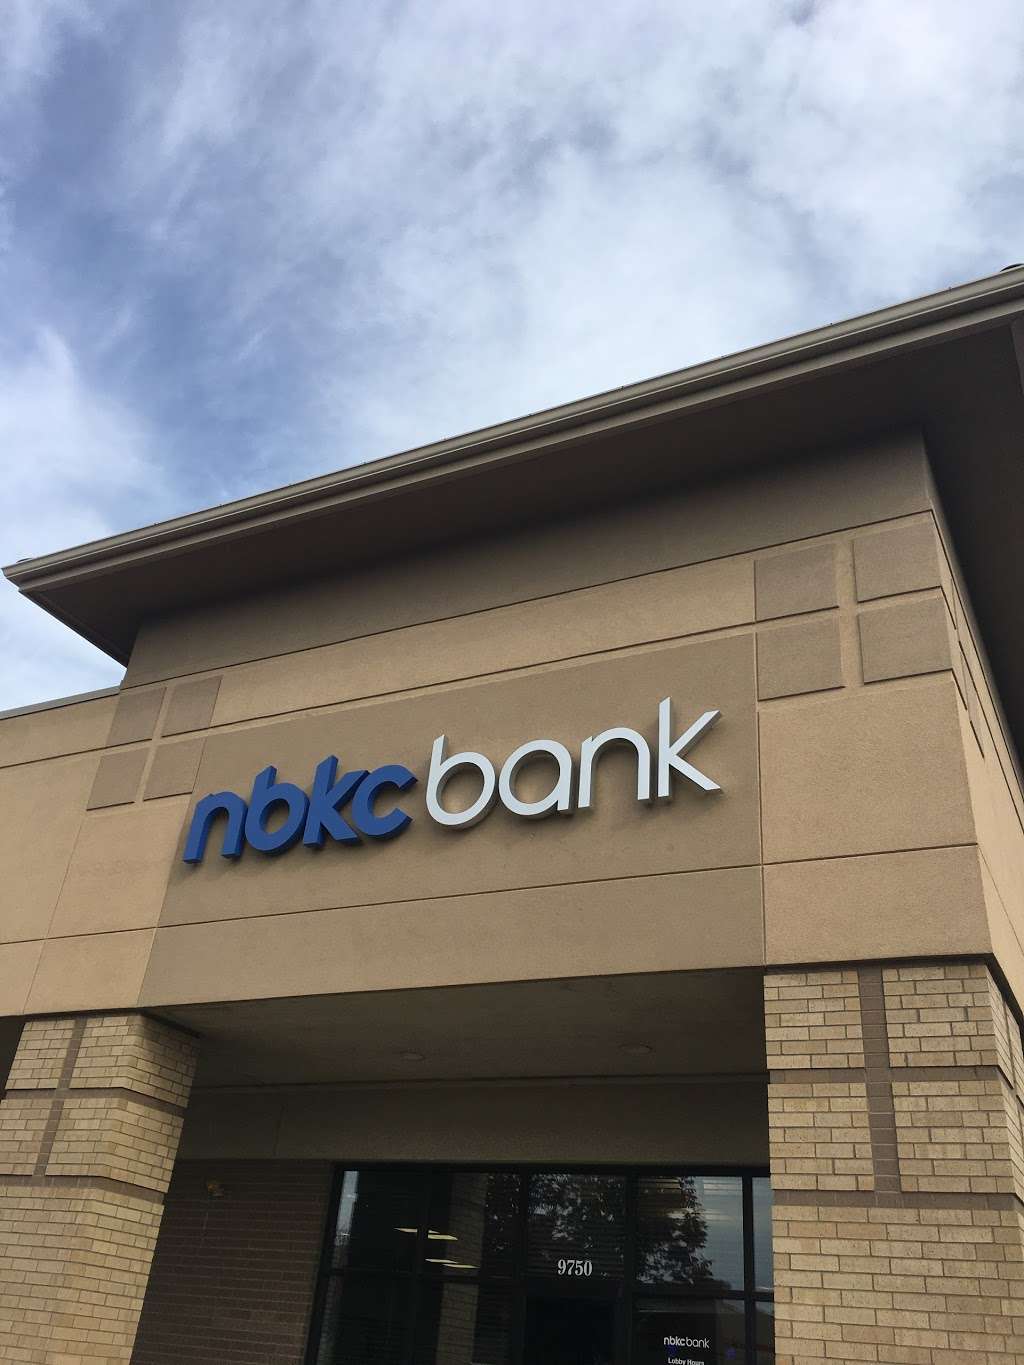 nbkc bank | 9750 N Ash Ave, Kansas City, MO 64157 | Phone: (816) 407-0300